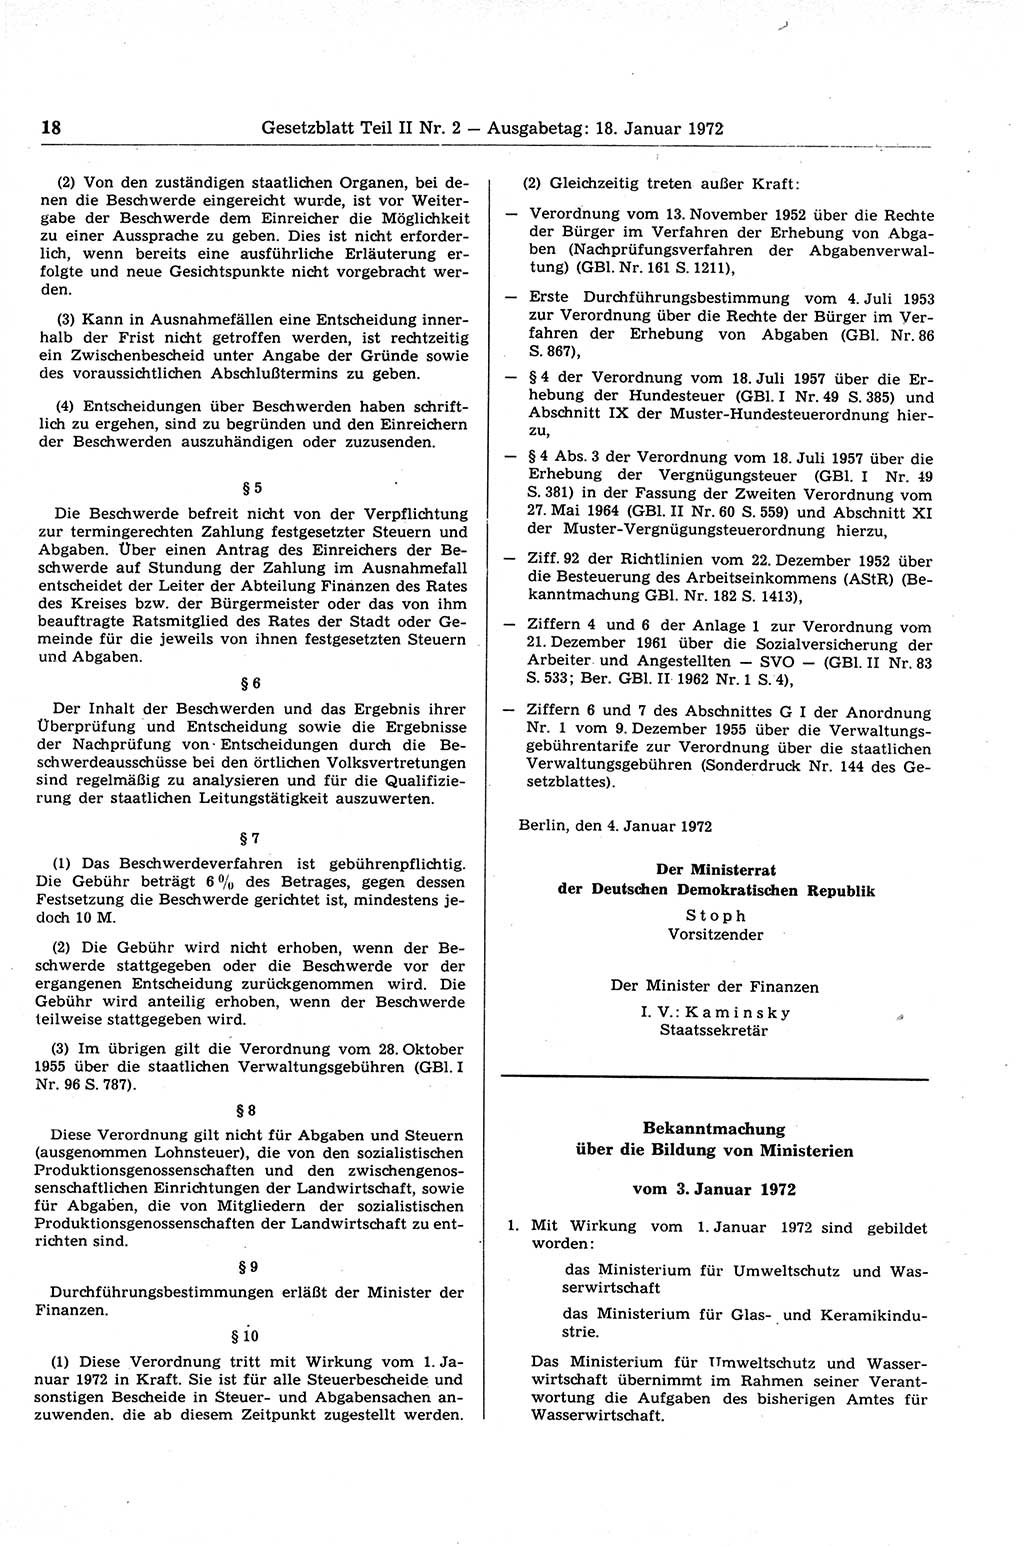 Gesetzblatt (GBl.) der Deutschen Demokratischen Republik (DDR) Teil ⅠⅠ 1972, Seite 18 (GBl. DDR ⅠⅠ 1972, S. 18)